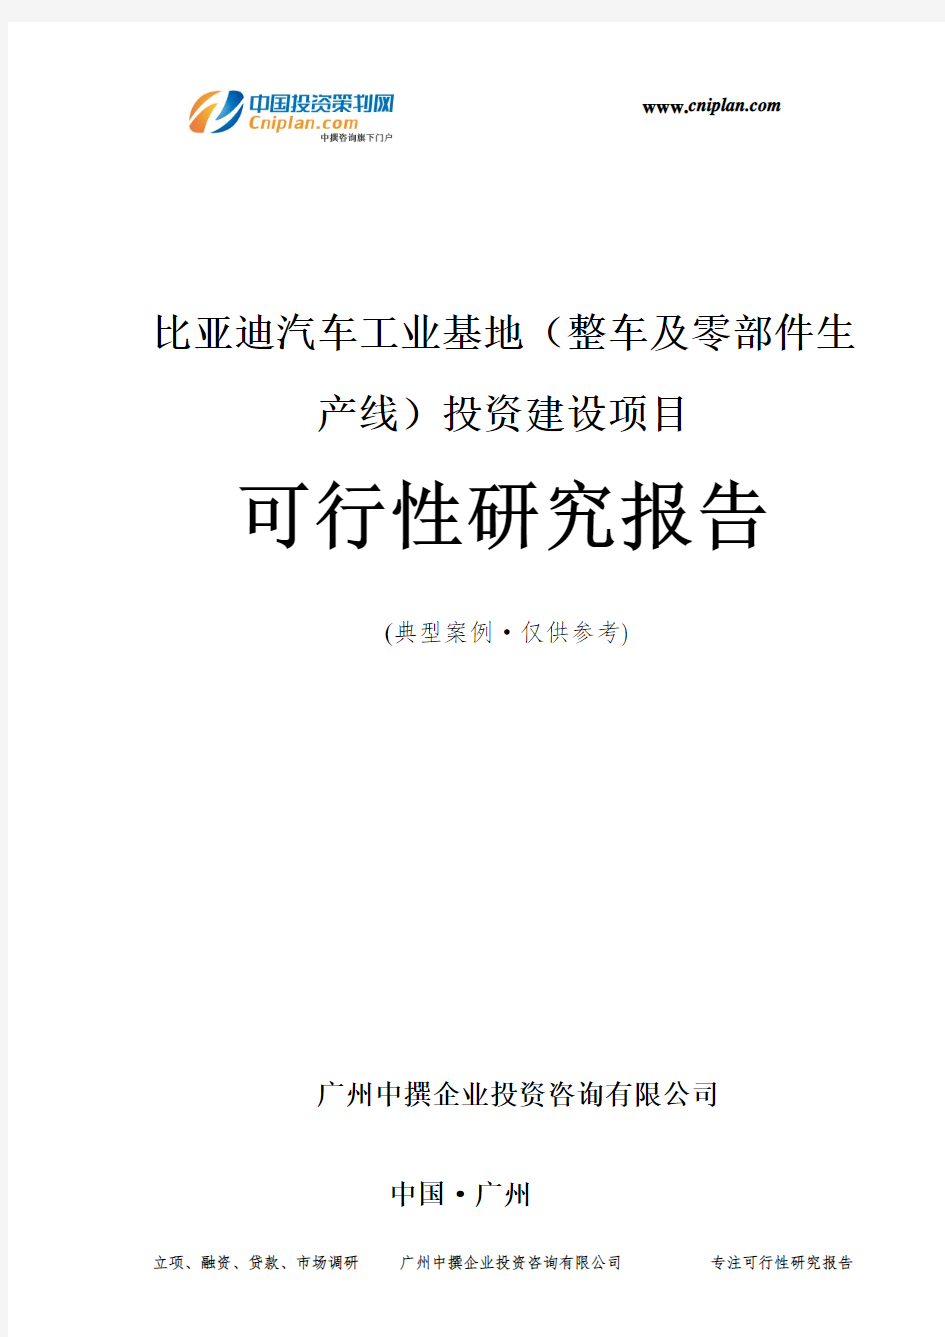 比亚迪汽车工业基地(整车及零部件生产线)投资建设项目可行性研究报告-广州中撰咨询